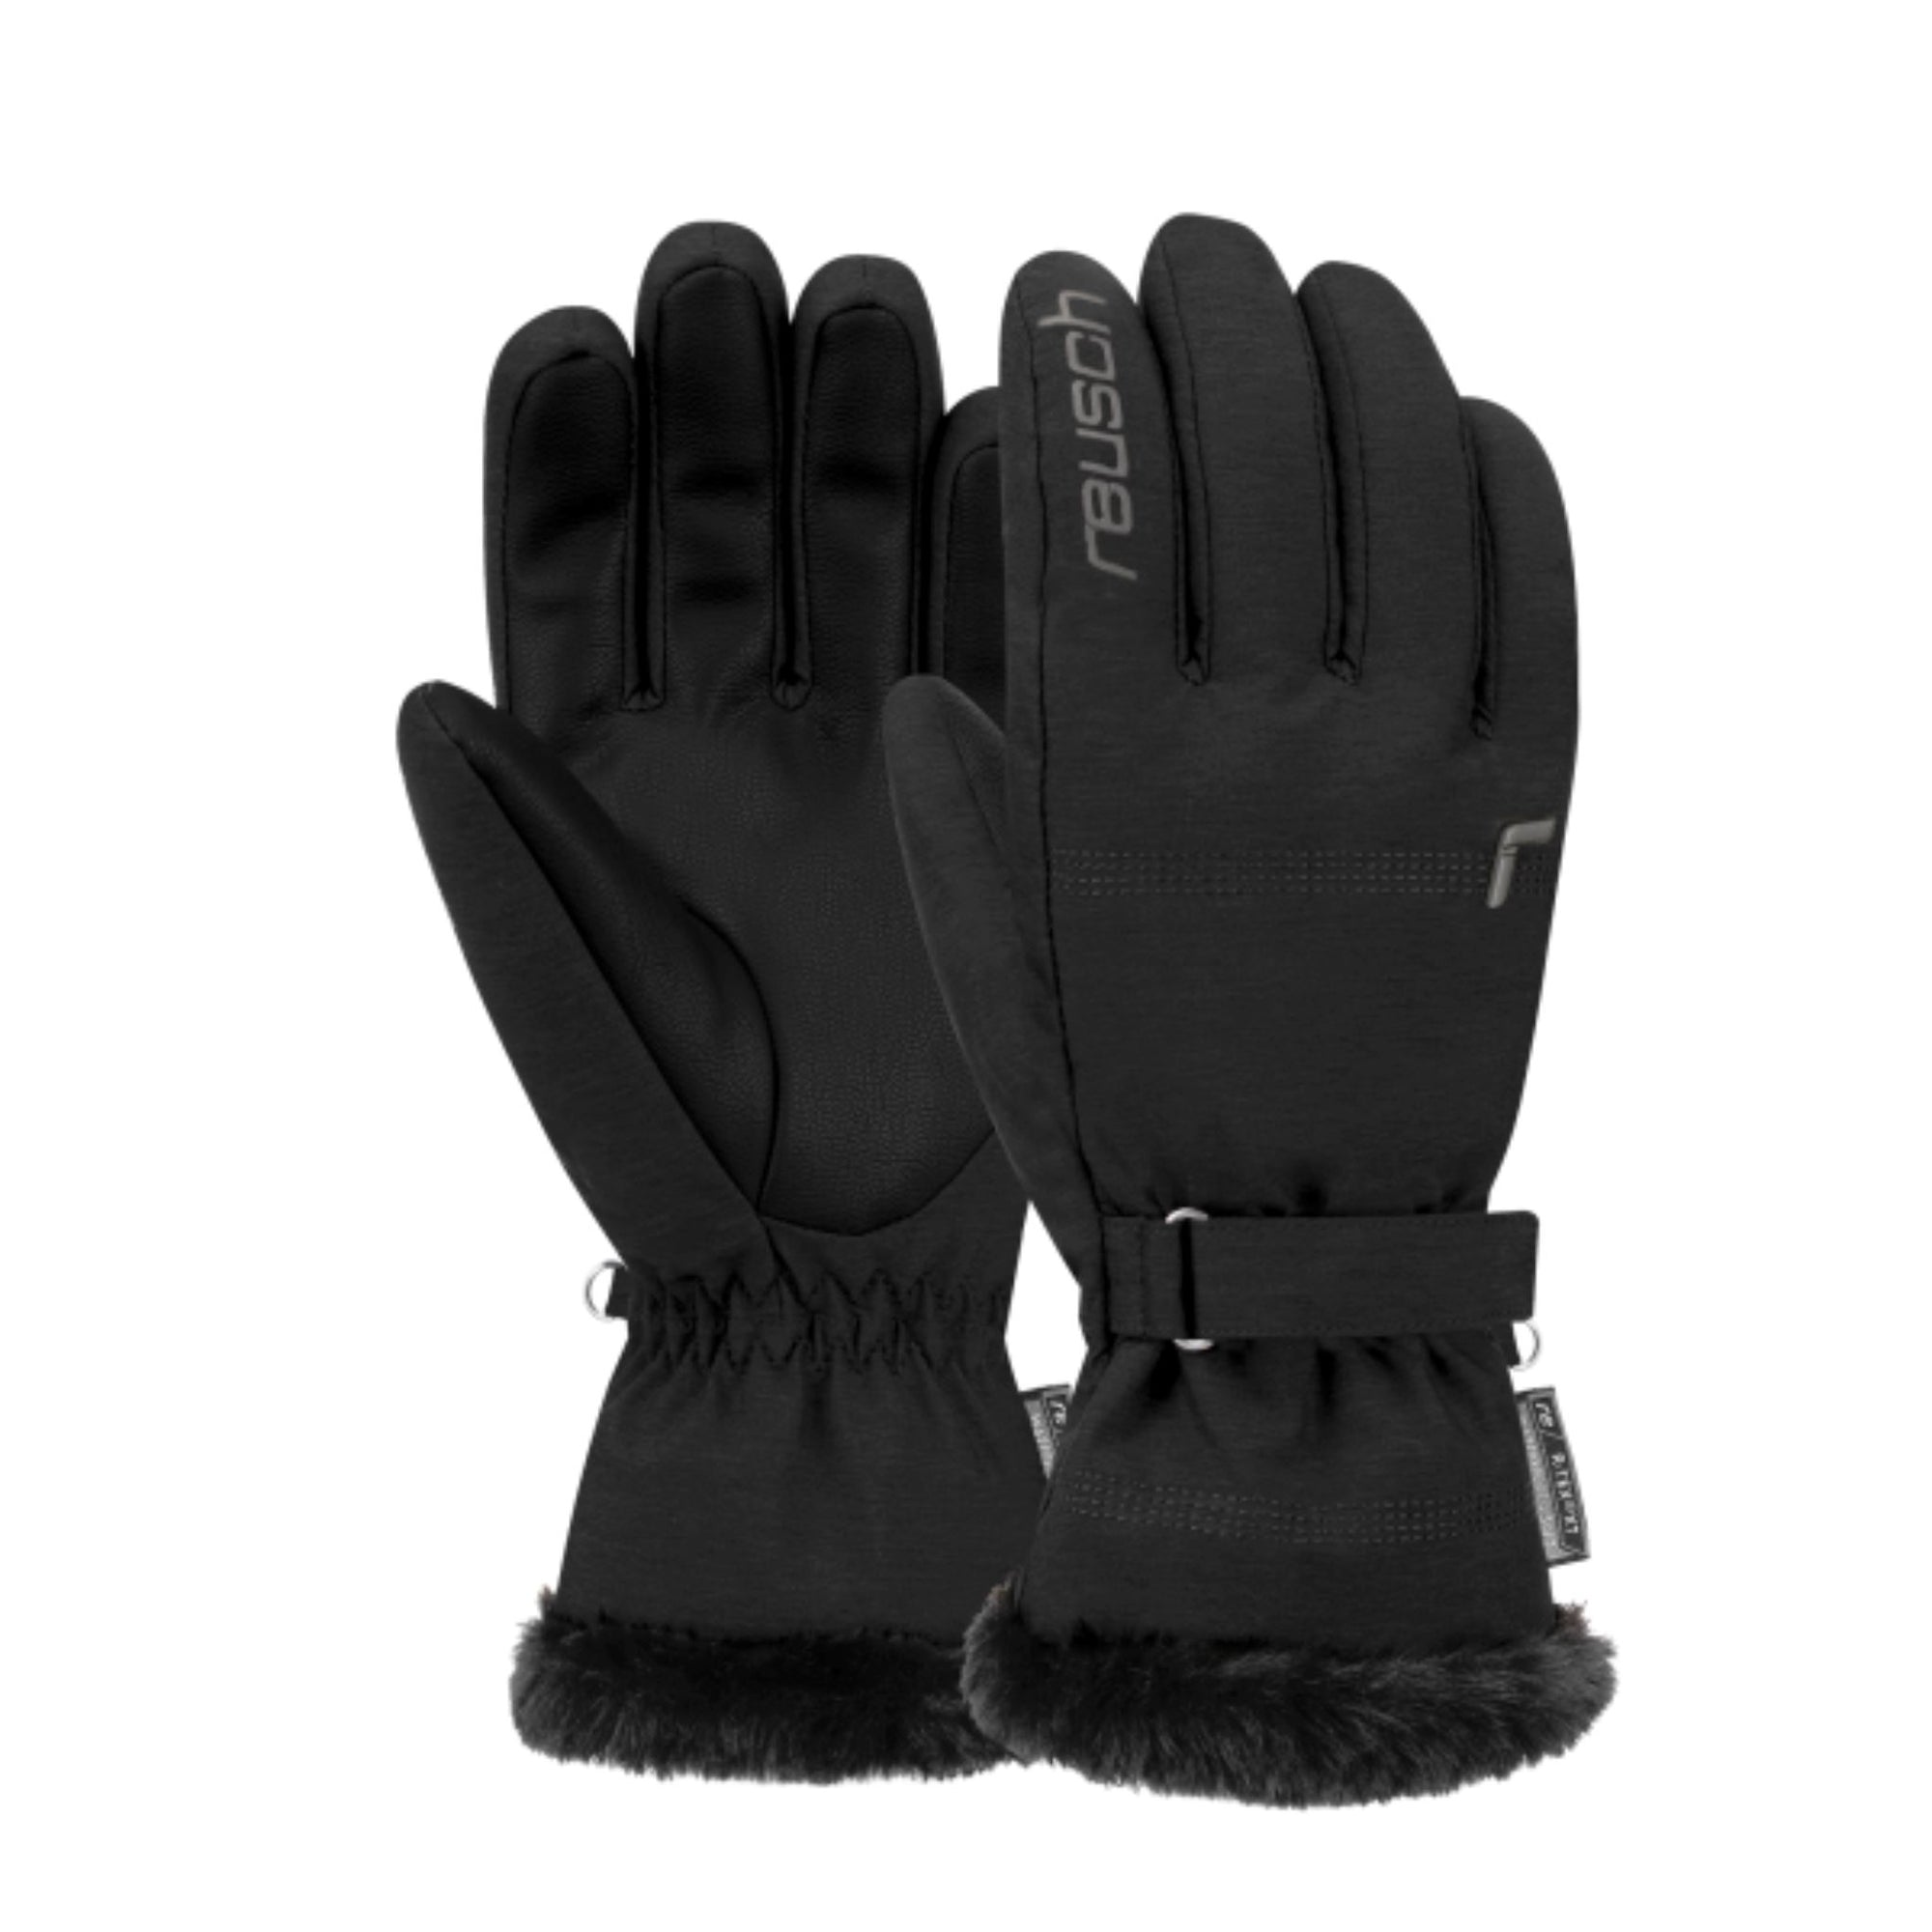 Womens Reusch Luna R-TEX XT - Black Gloves Reusch XS / 6.5 